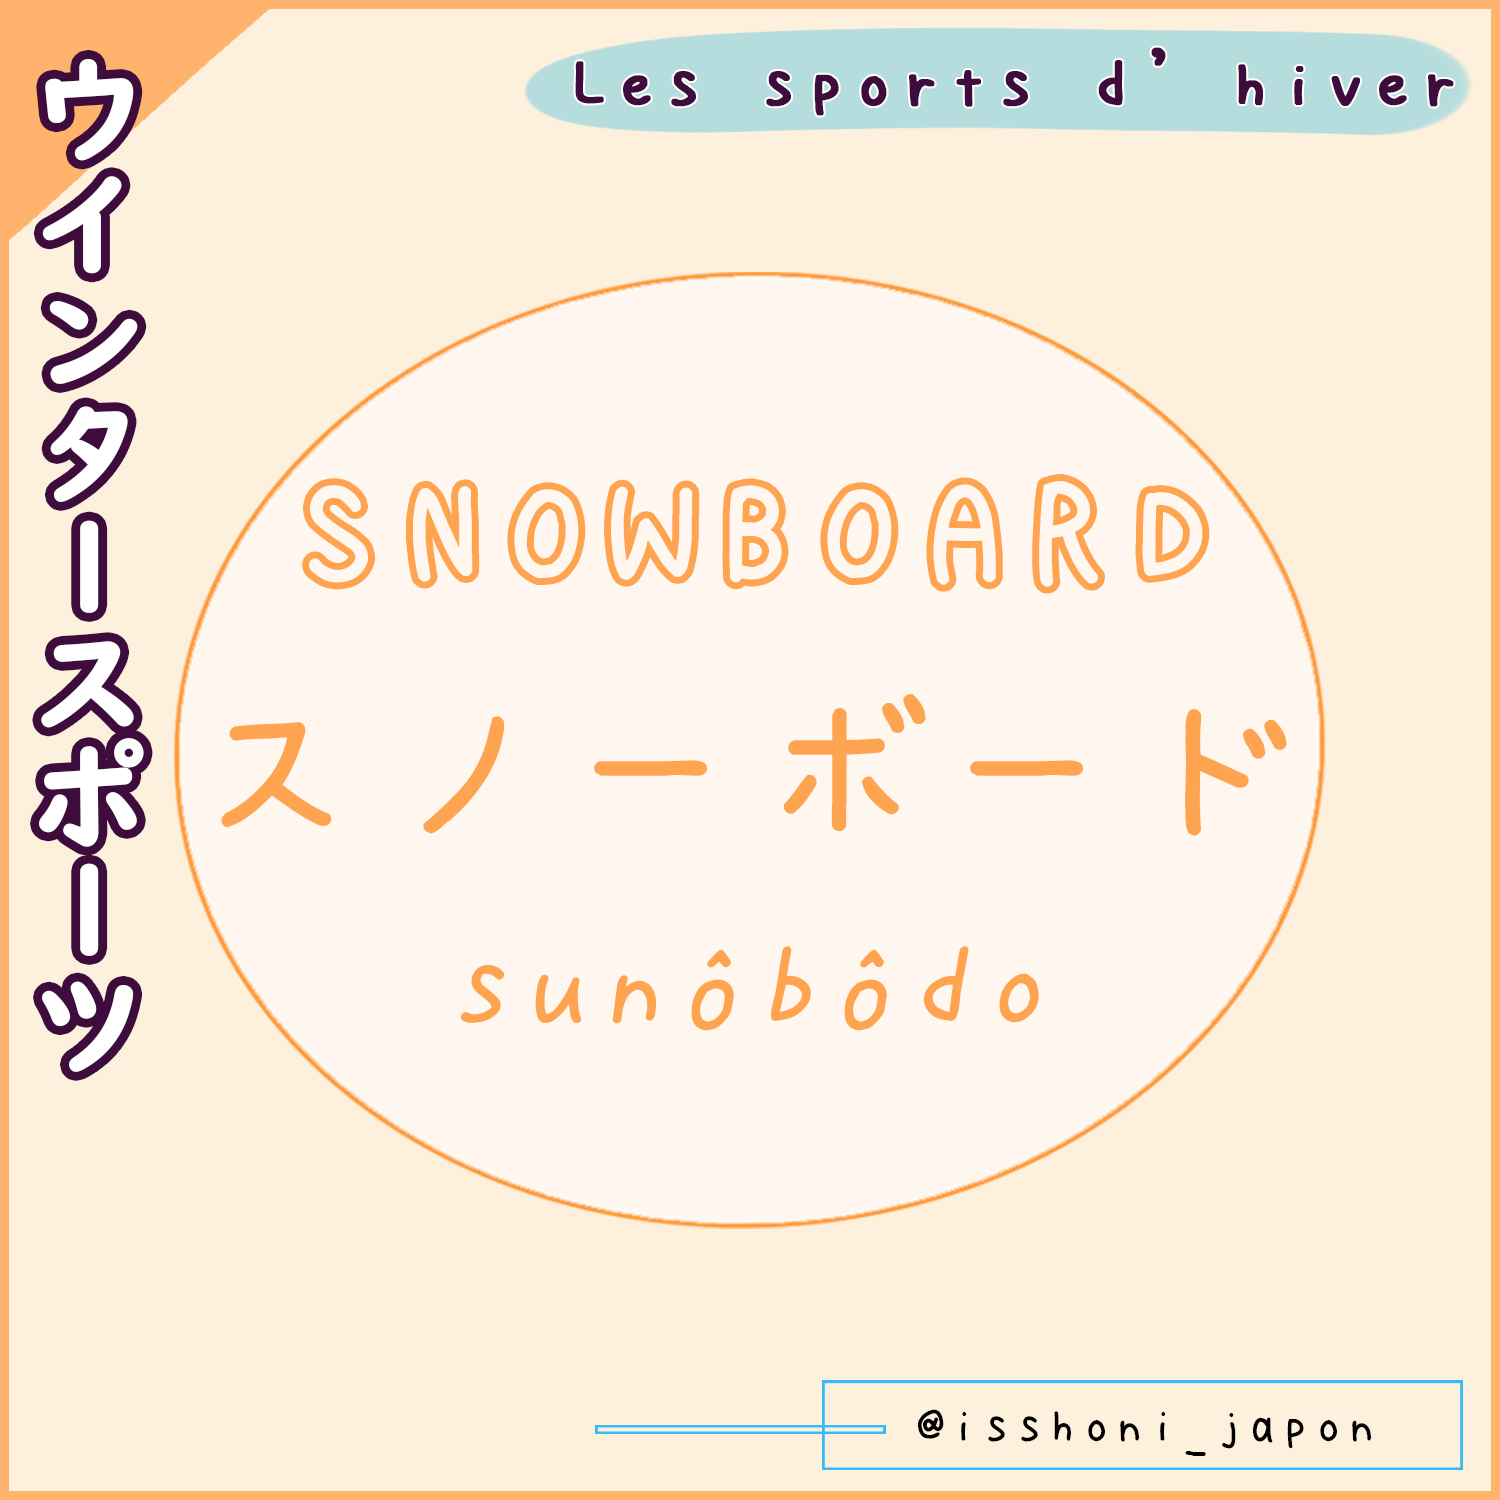 Hiver au Japon - snowboard